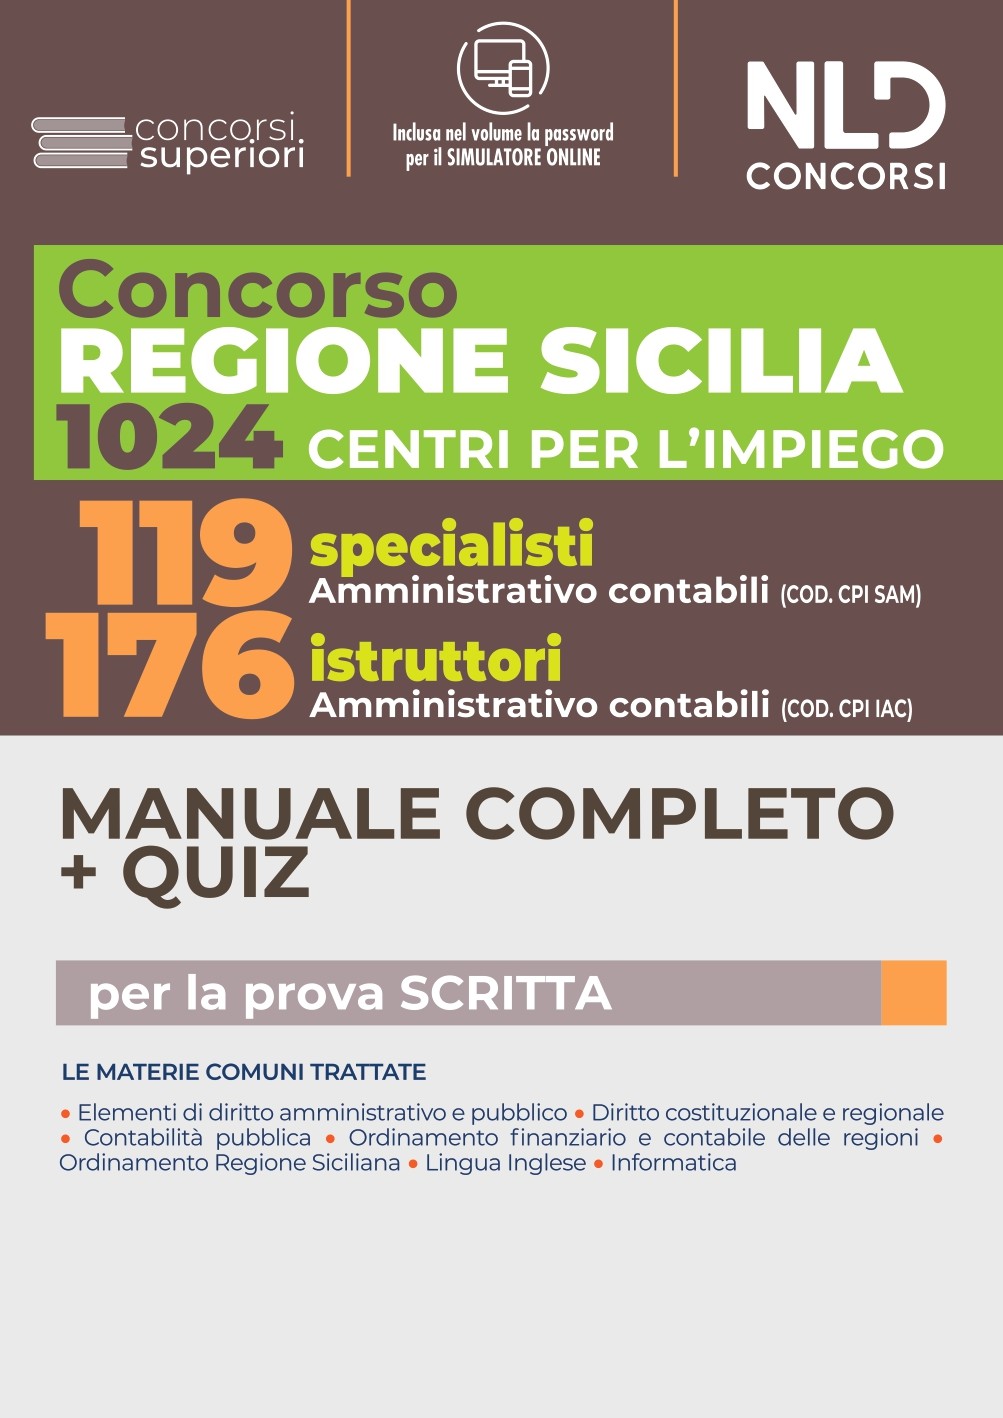 CPI SICILIA Concorso 1024 Regione Sicilia: Manuale Completo + Quiz per 119 Specialisti + 176 Istruttori Amministrativo Contabili nei Centri per l'impiego